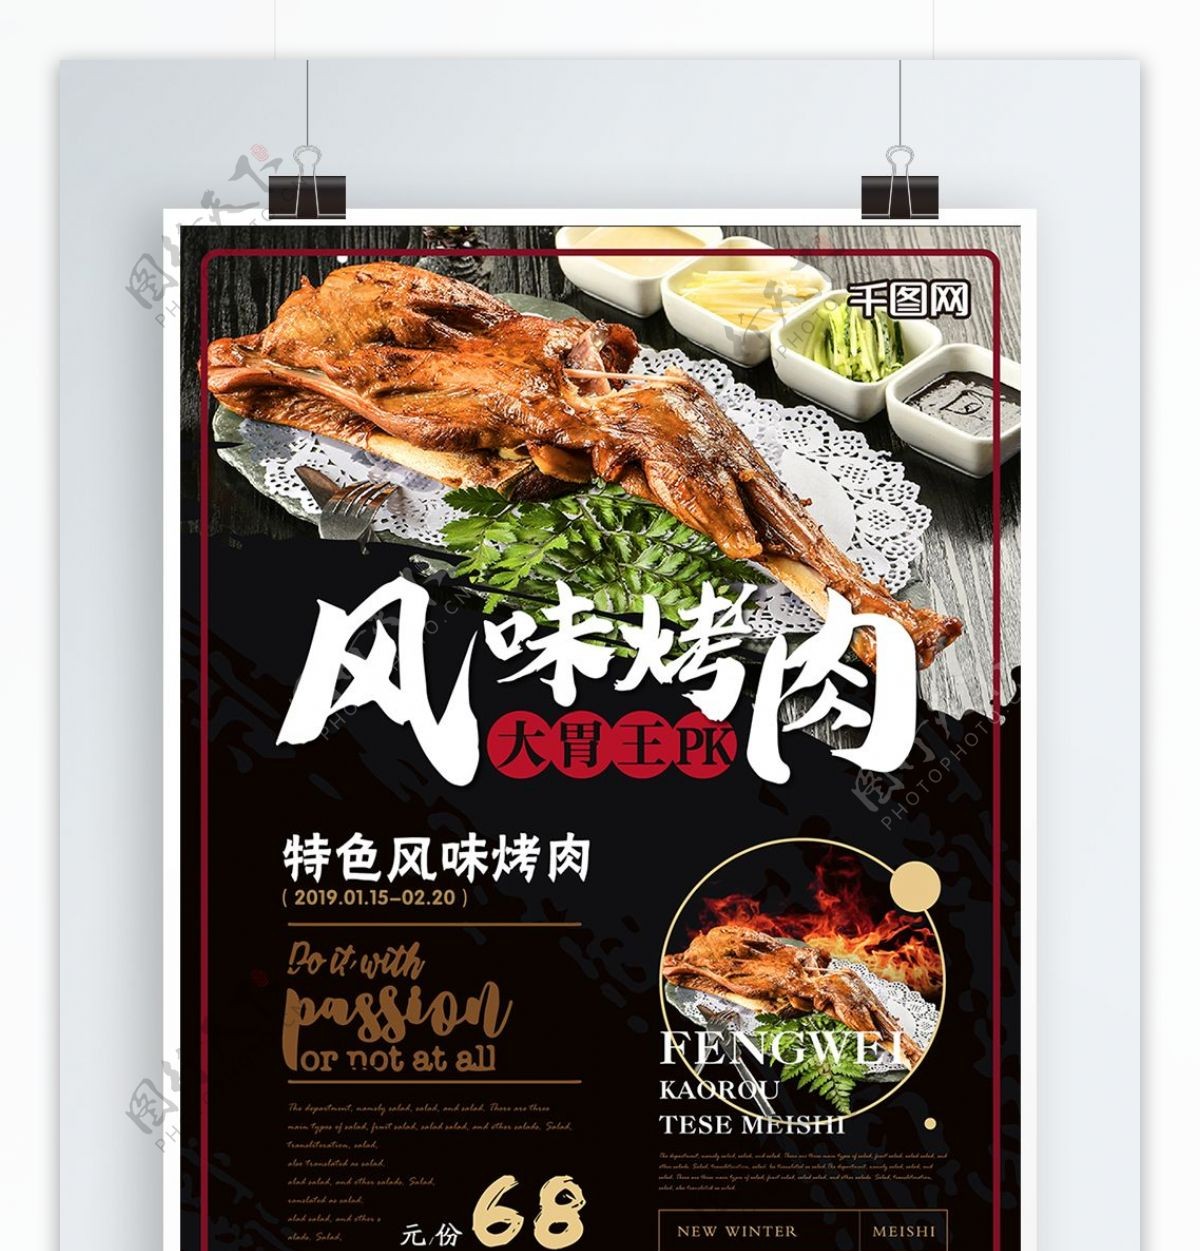 简约风大胃王PK风味烤肉美食海报